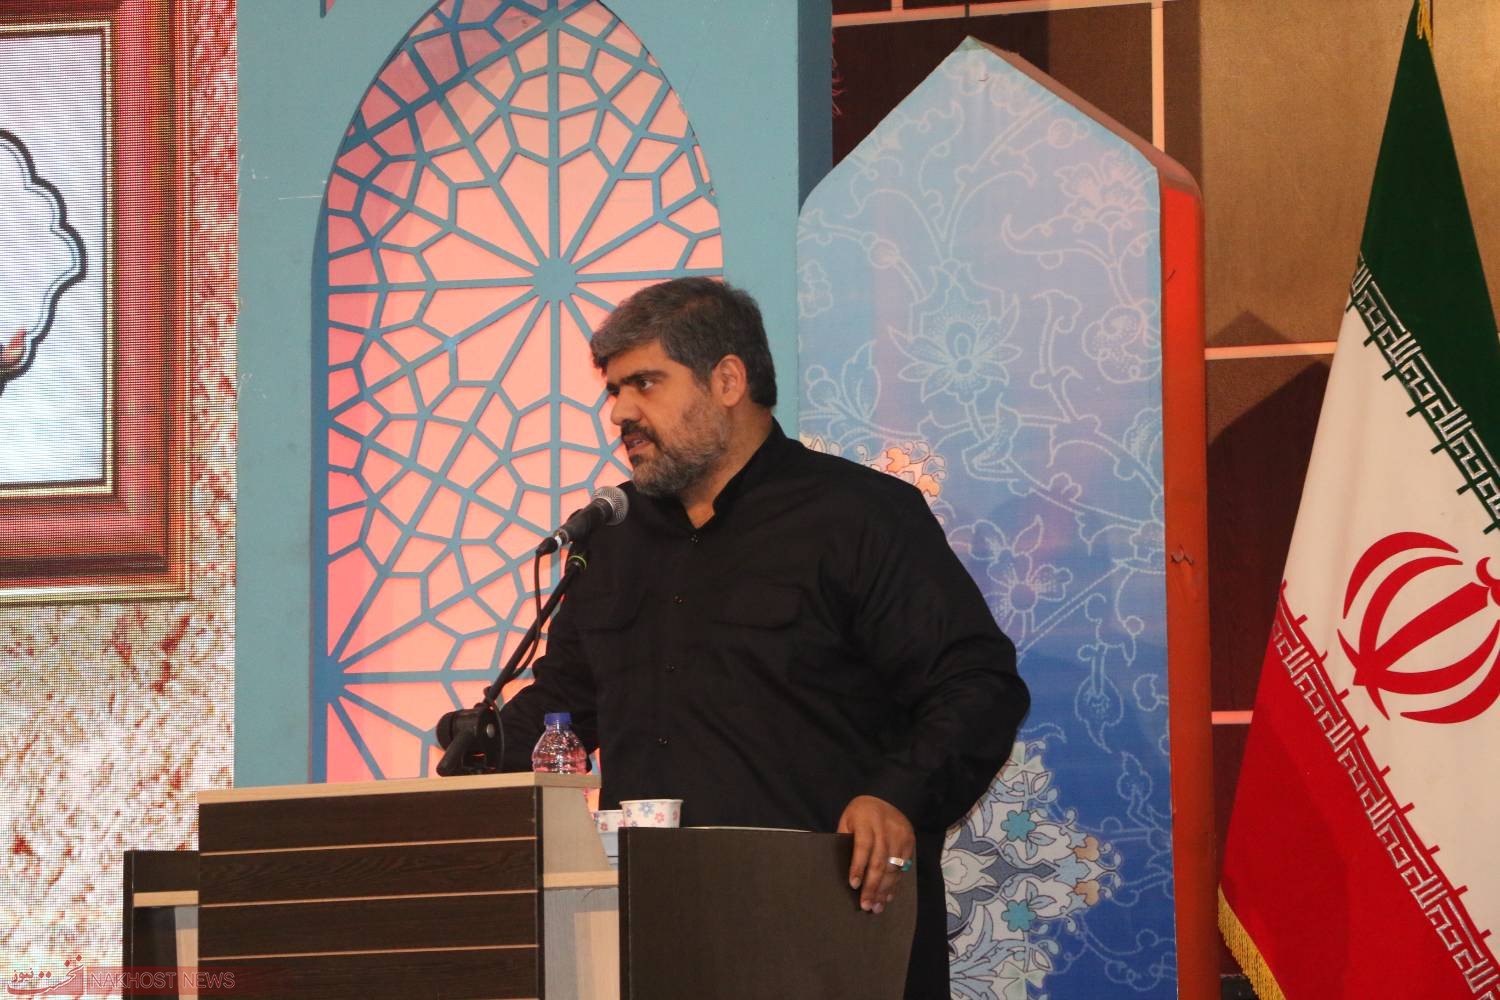 حاج آقای نصرپور: شهدای رسانه در میدان جهاد تبیین می درخشند